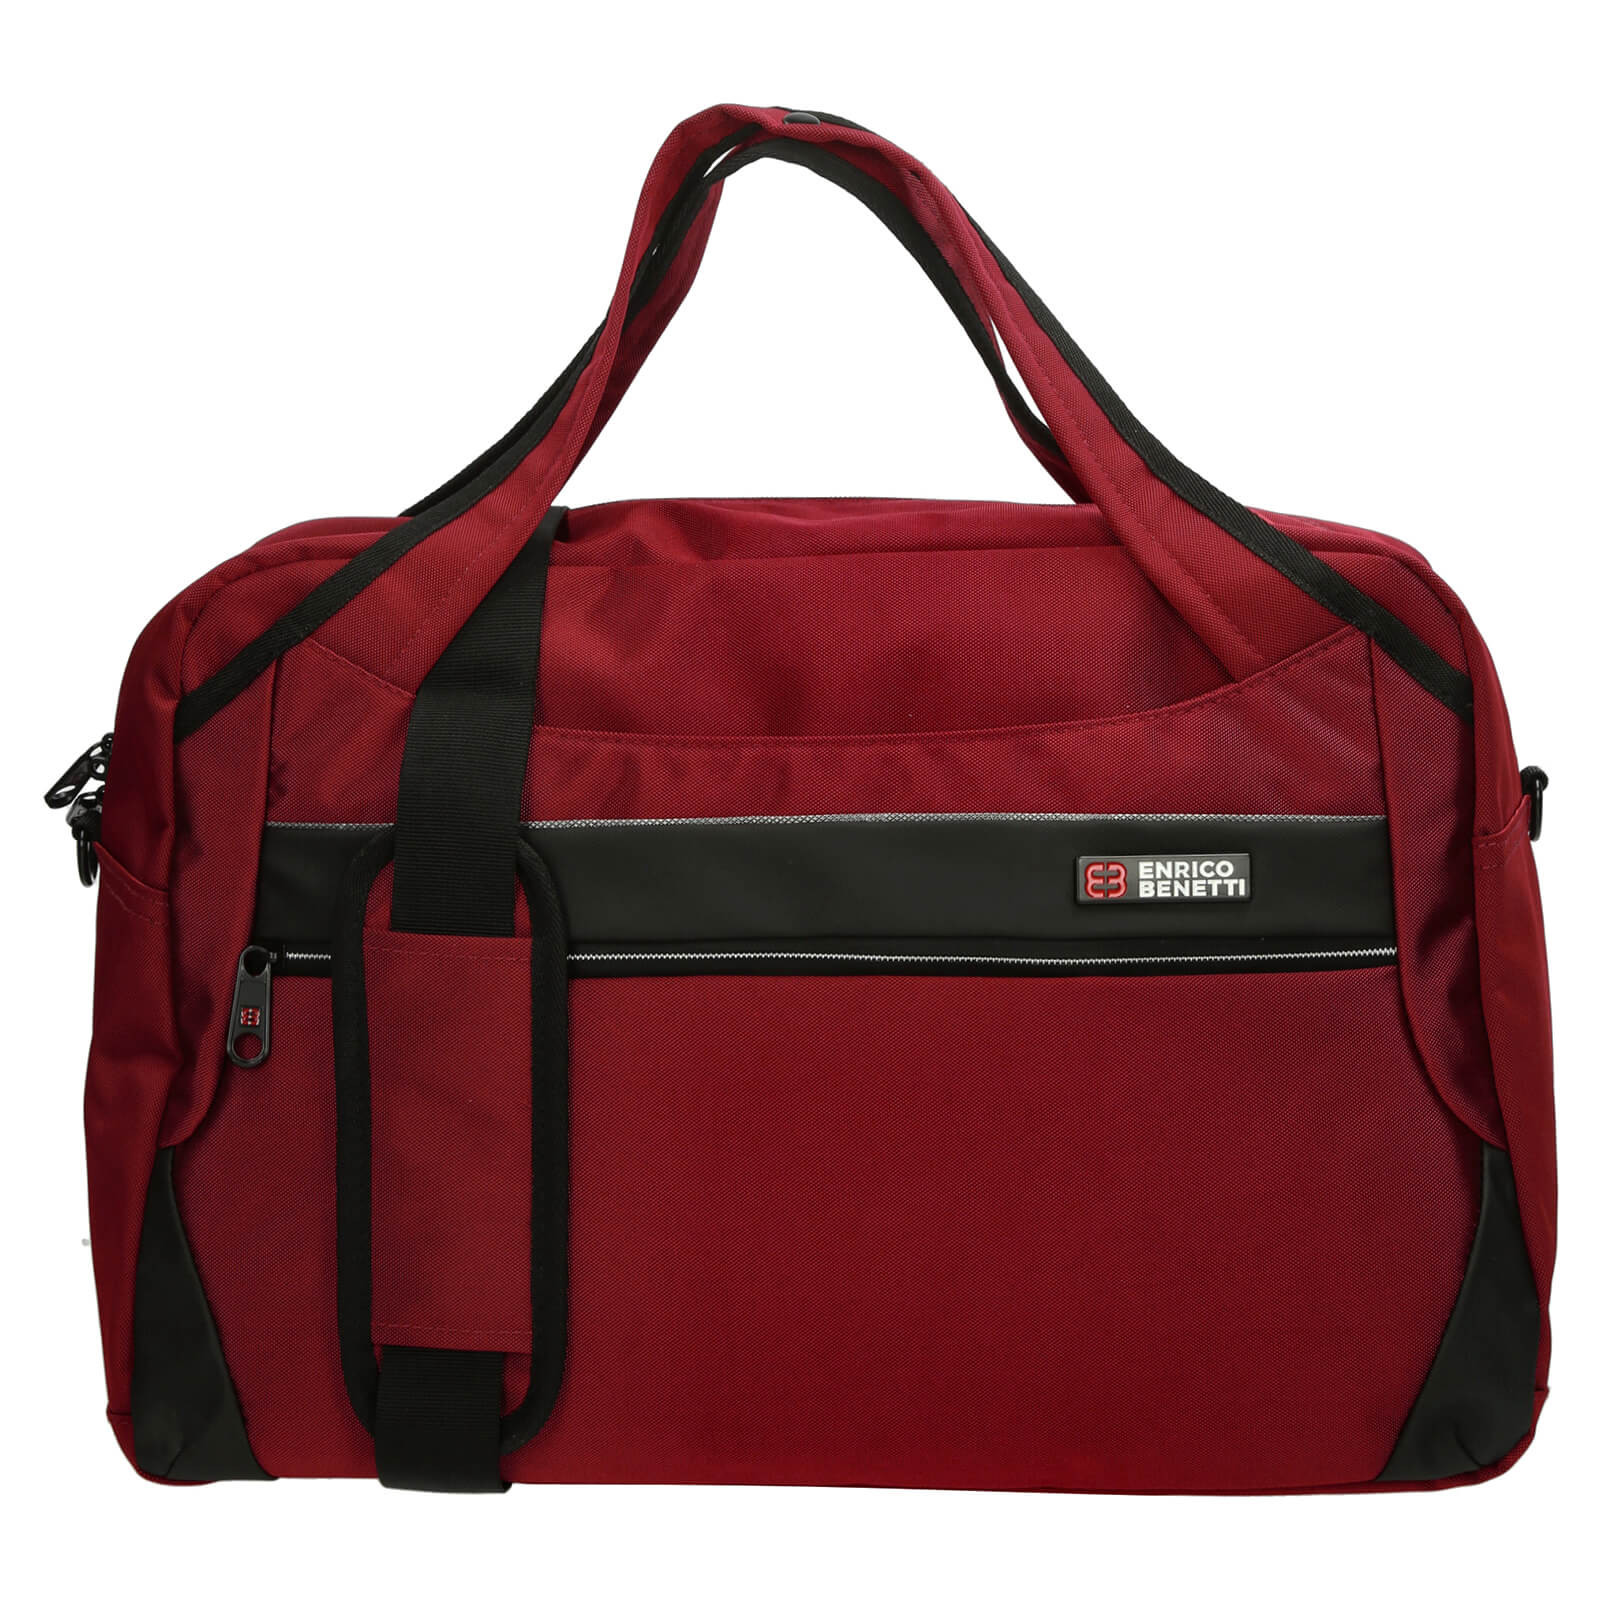 Image of Cestovná taška Enrico Benetti Zurich - červená SK